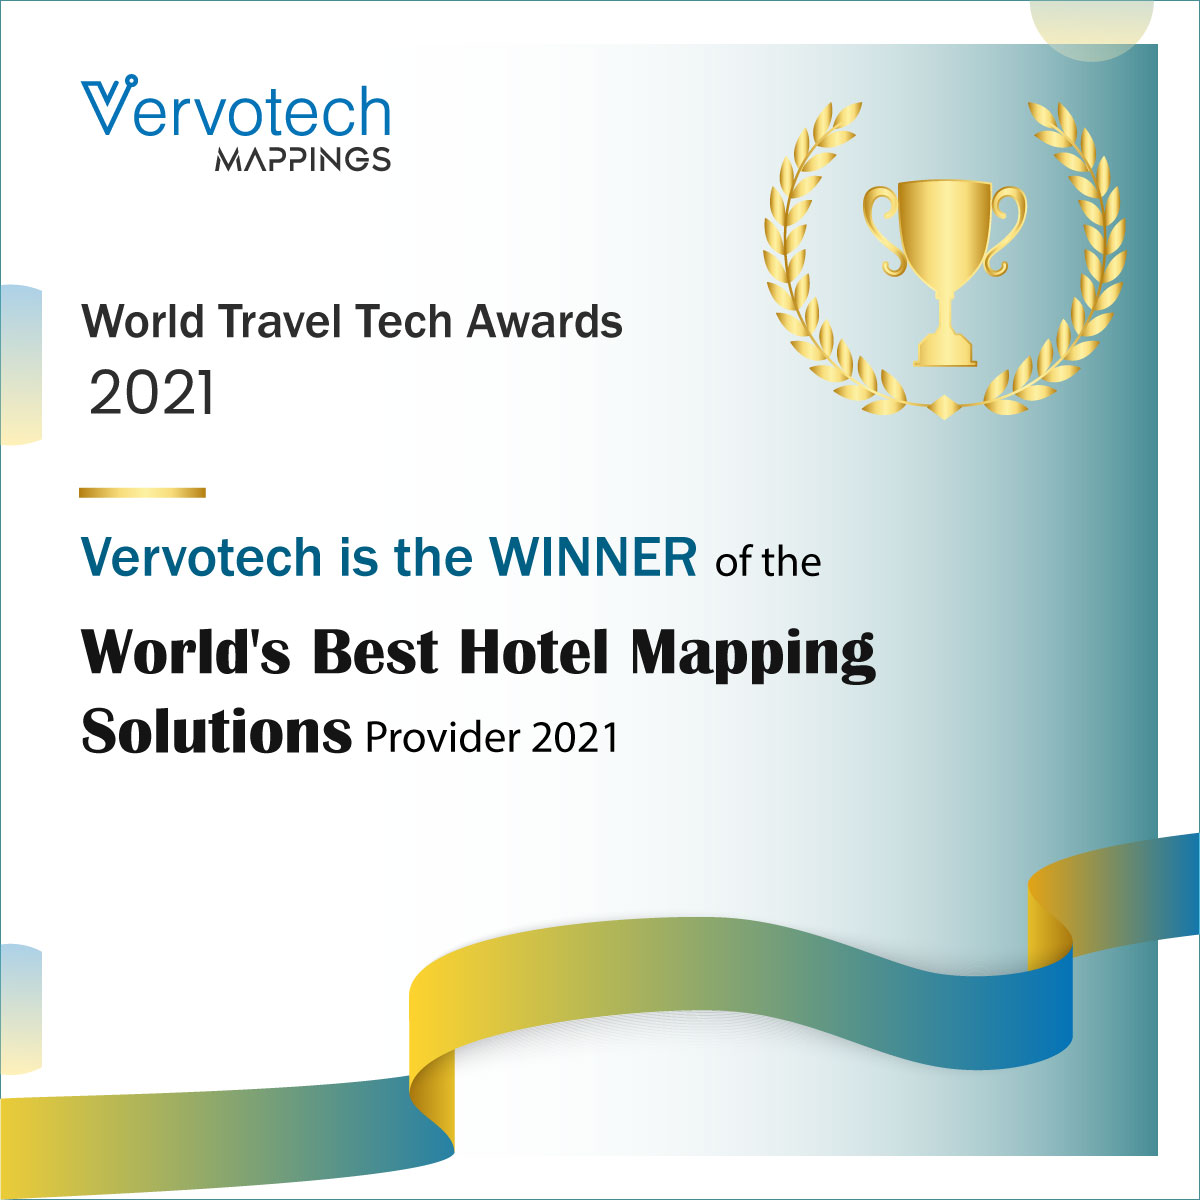 Vervotech es anunciado como el mejor proveedor de soluciones de cartografía para hoteles en 2021 por los World Travel Tech Awards